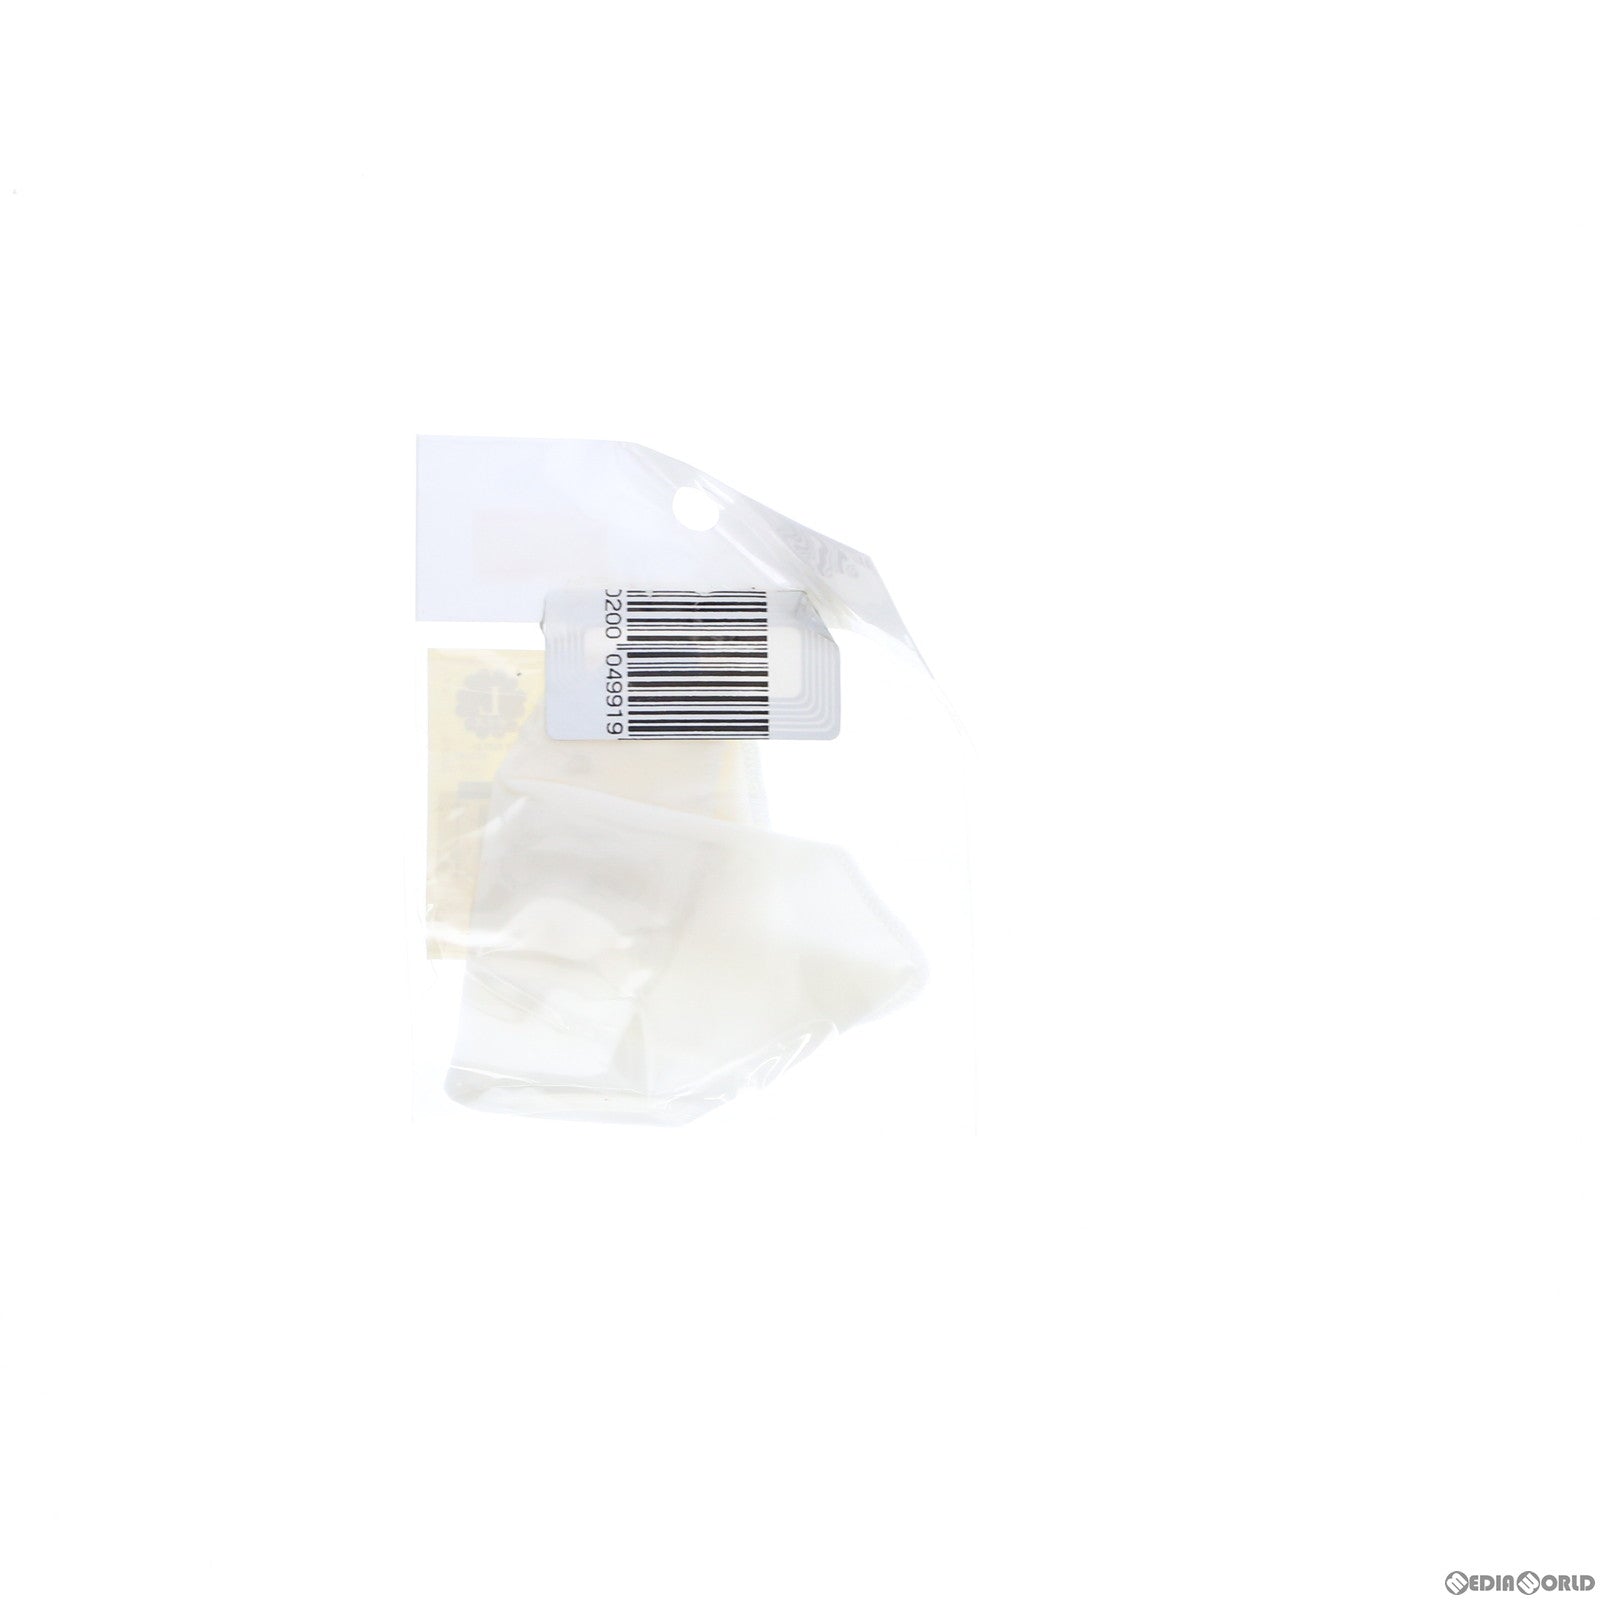 【中古即納】[DOL]Dollfie ドルフィーヘッドキャップLサイズ(ホワイト) ドール用アクセサリ ボークスショップ&ホビー天国ウェブ限定 ボークス(20121231)